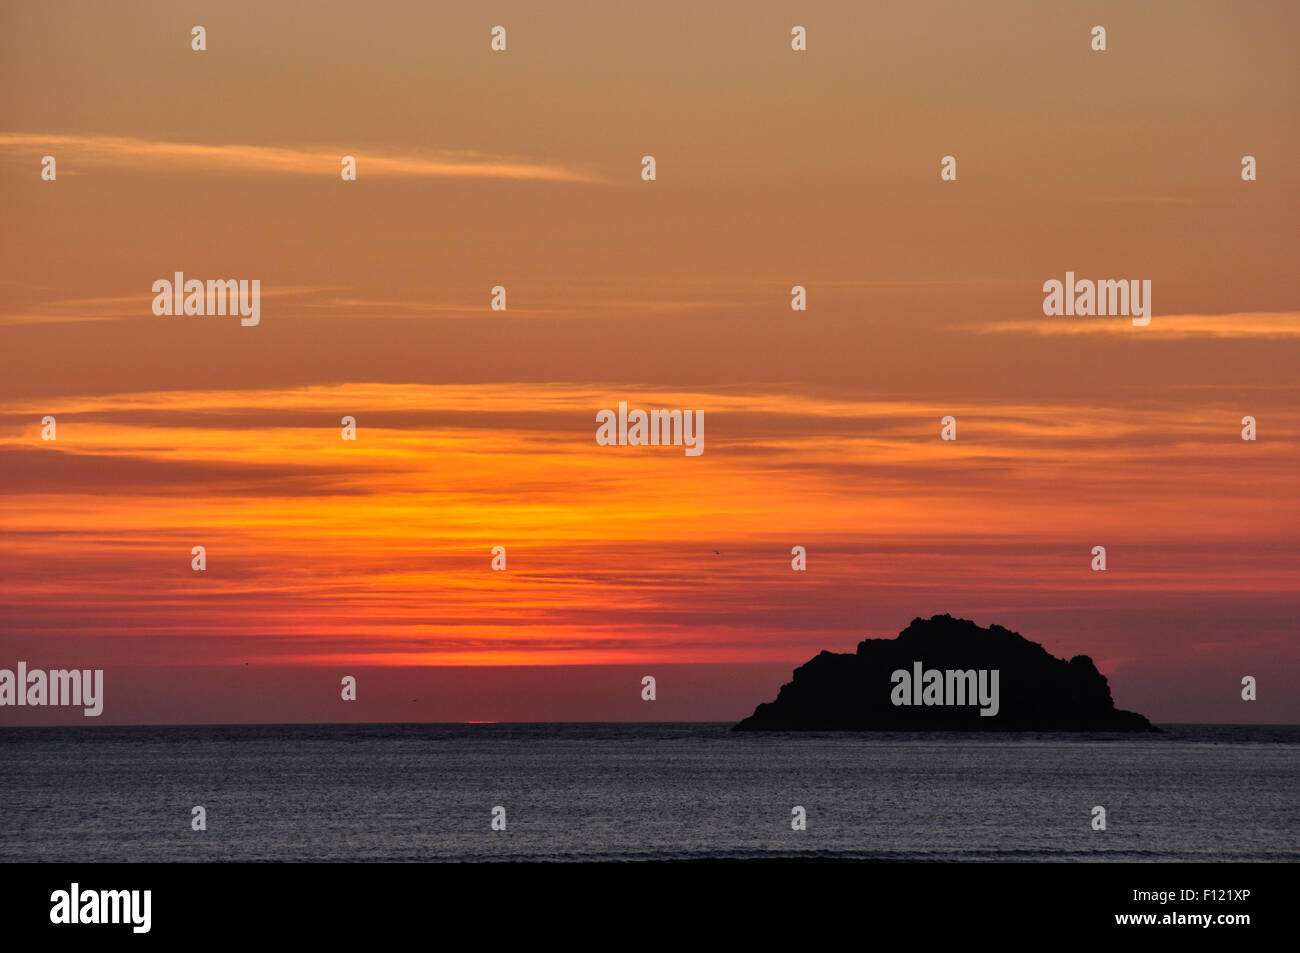 Cornouailles du nord - orange rouge et or skyscape - immédiatement après le coucher du soleil sur la mer - une île de silhouette noire Banque D'Images